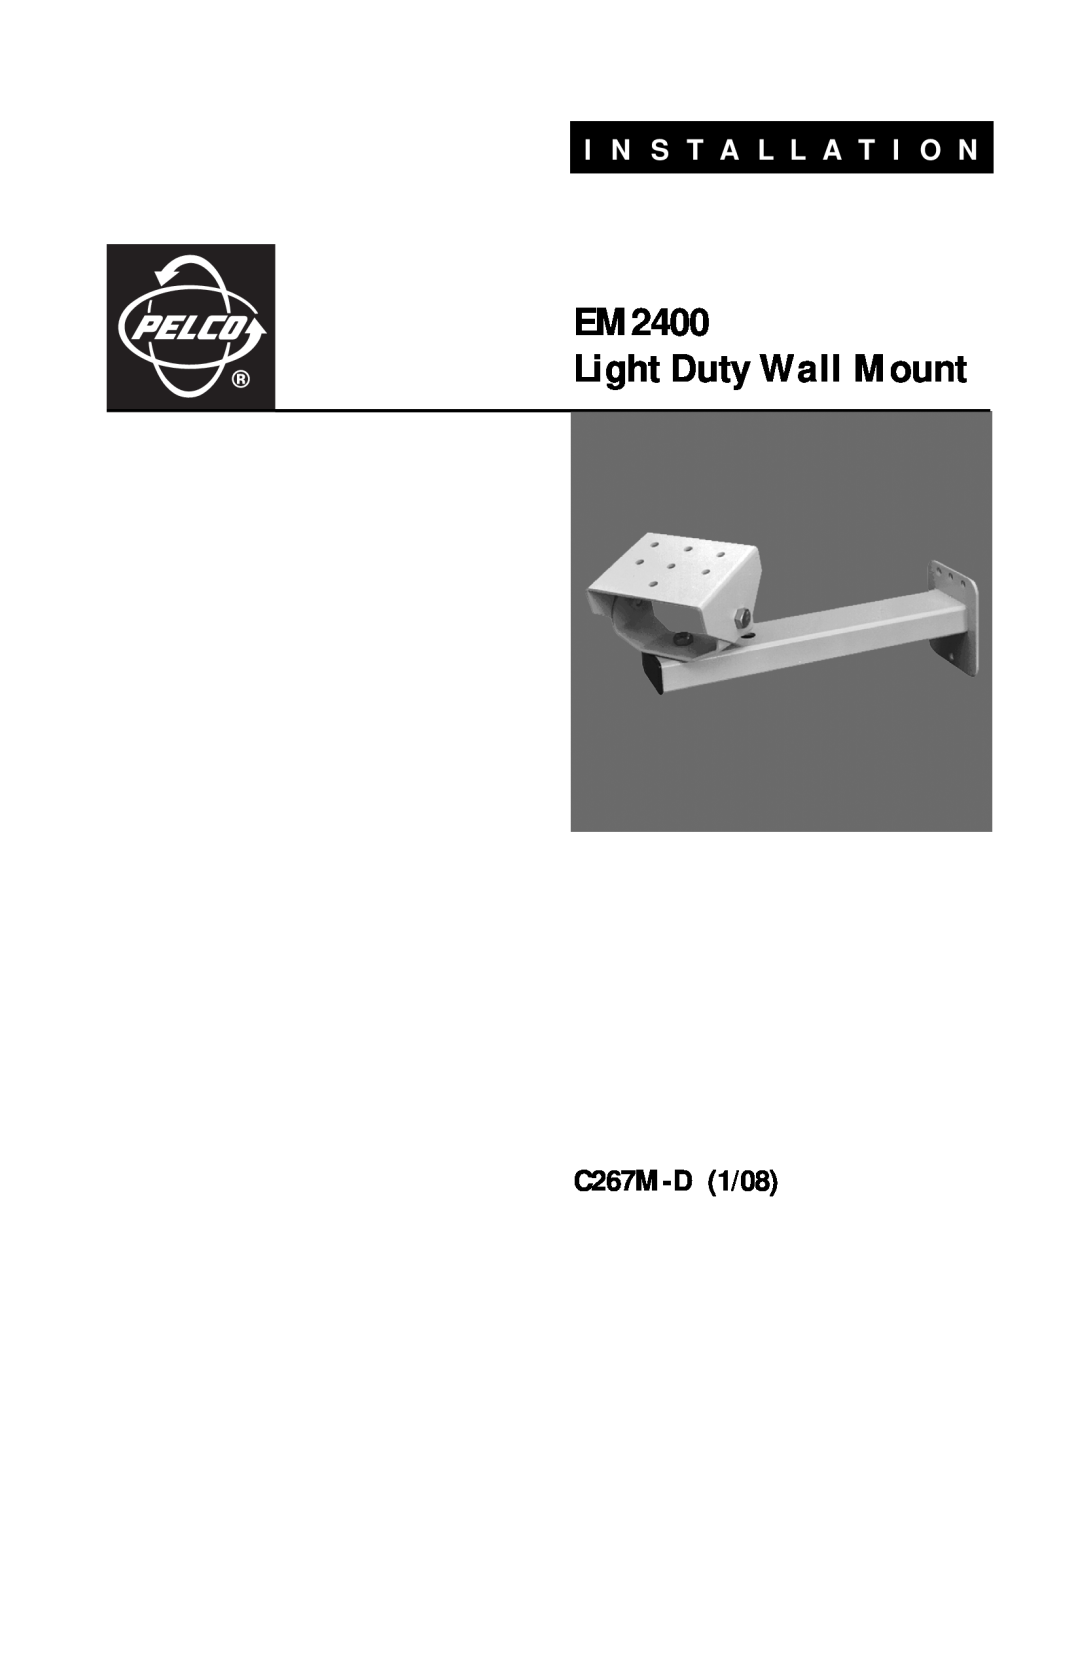 Pelco EM 2400 manual C267M-D1/08, EM2400 Light Duty Wall Mount, I N S T A L L A T I O N 